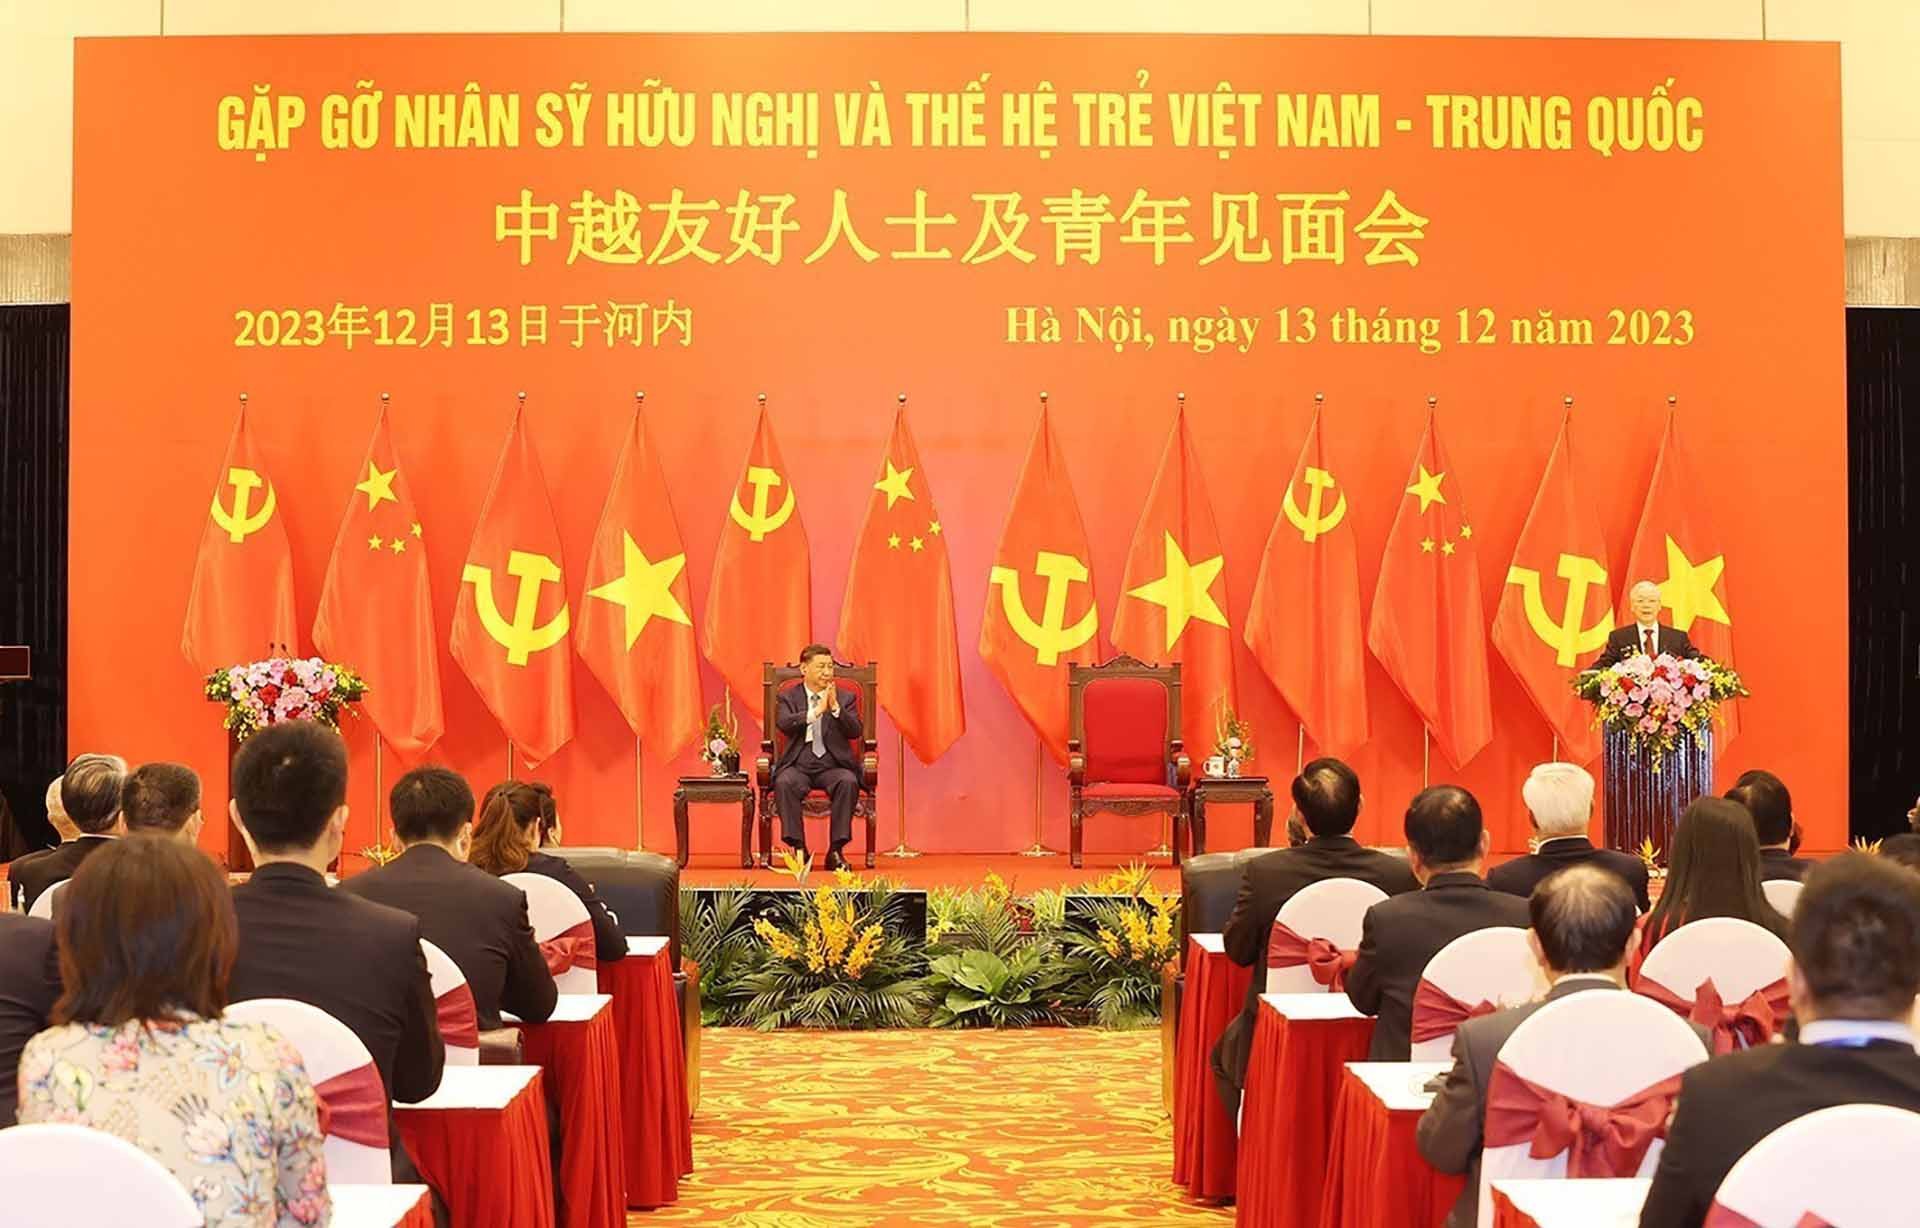 Phát biểu của Tổng Bí thư Nguyễn Phú Trọng tại buổi Gặp gỡ nhân sĩ hữu nghị và thế hệ trẻ hai nước Việt Nam-Trung Quốc